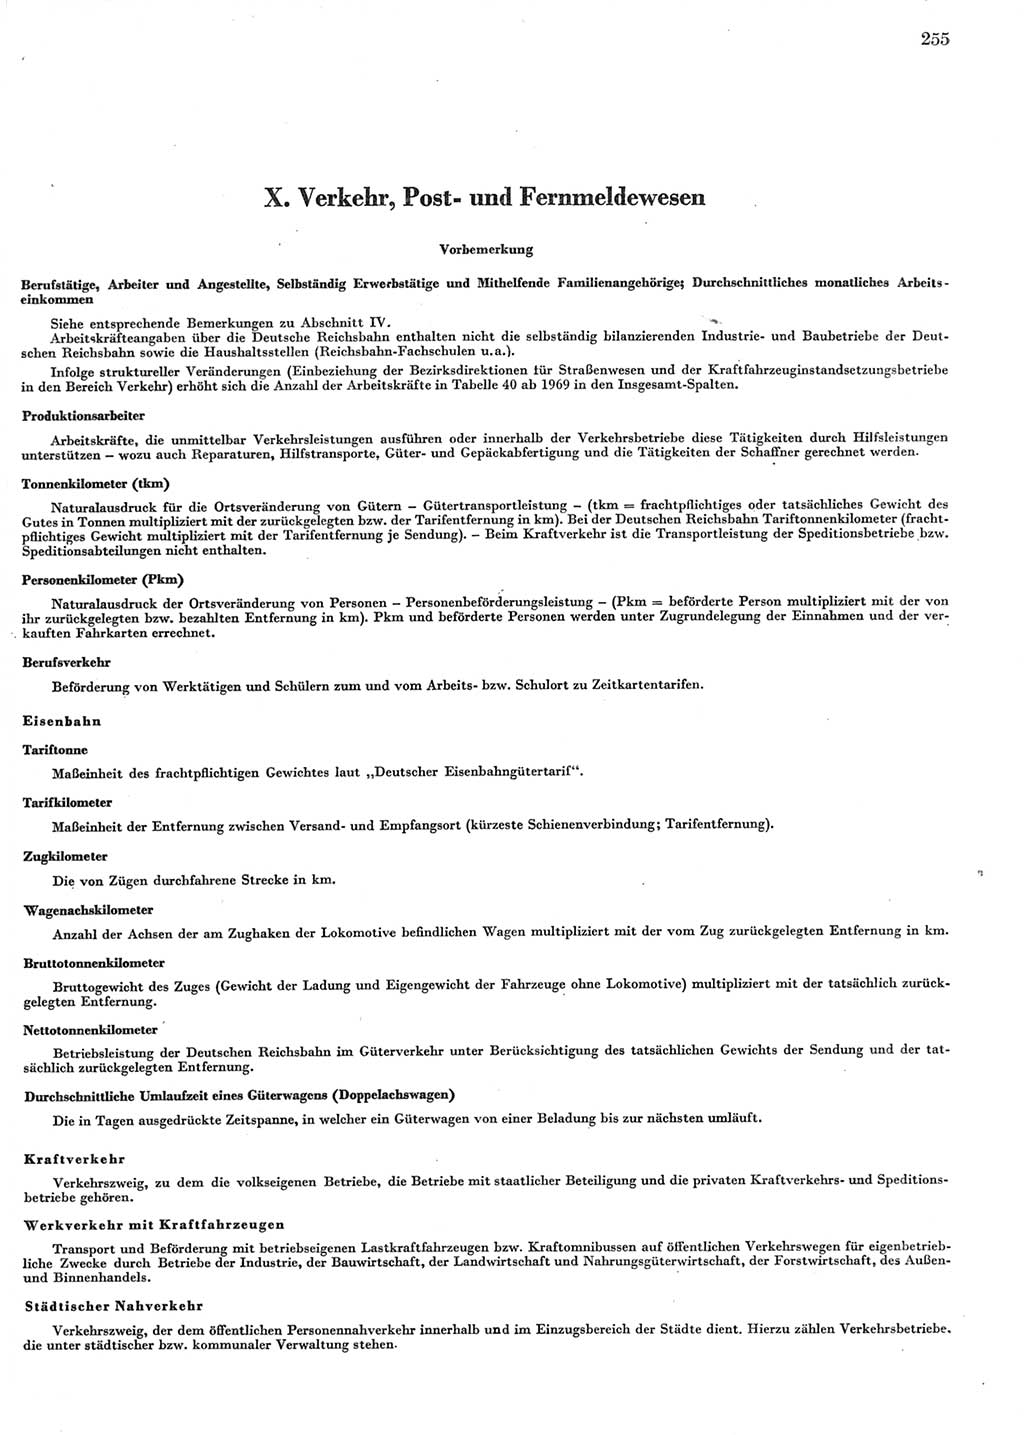 Statistisches Jahrbuch der Deutschen Demokratischen Republik (DDR) 1972, Seite 255 (Stat. Jb. DDR 1972, S. 255)